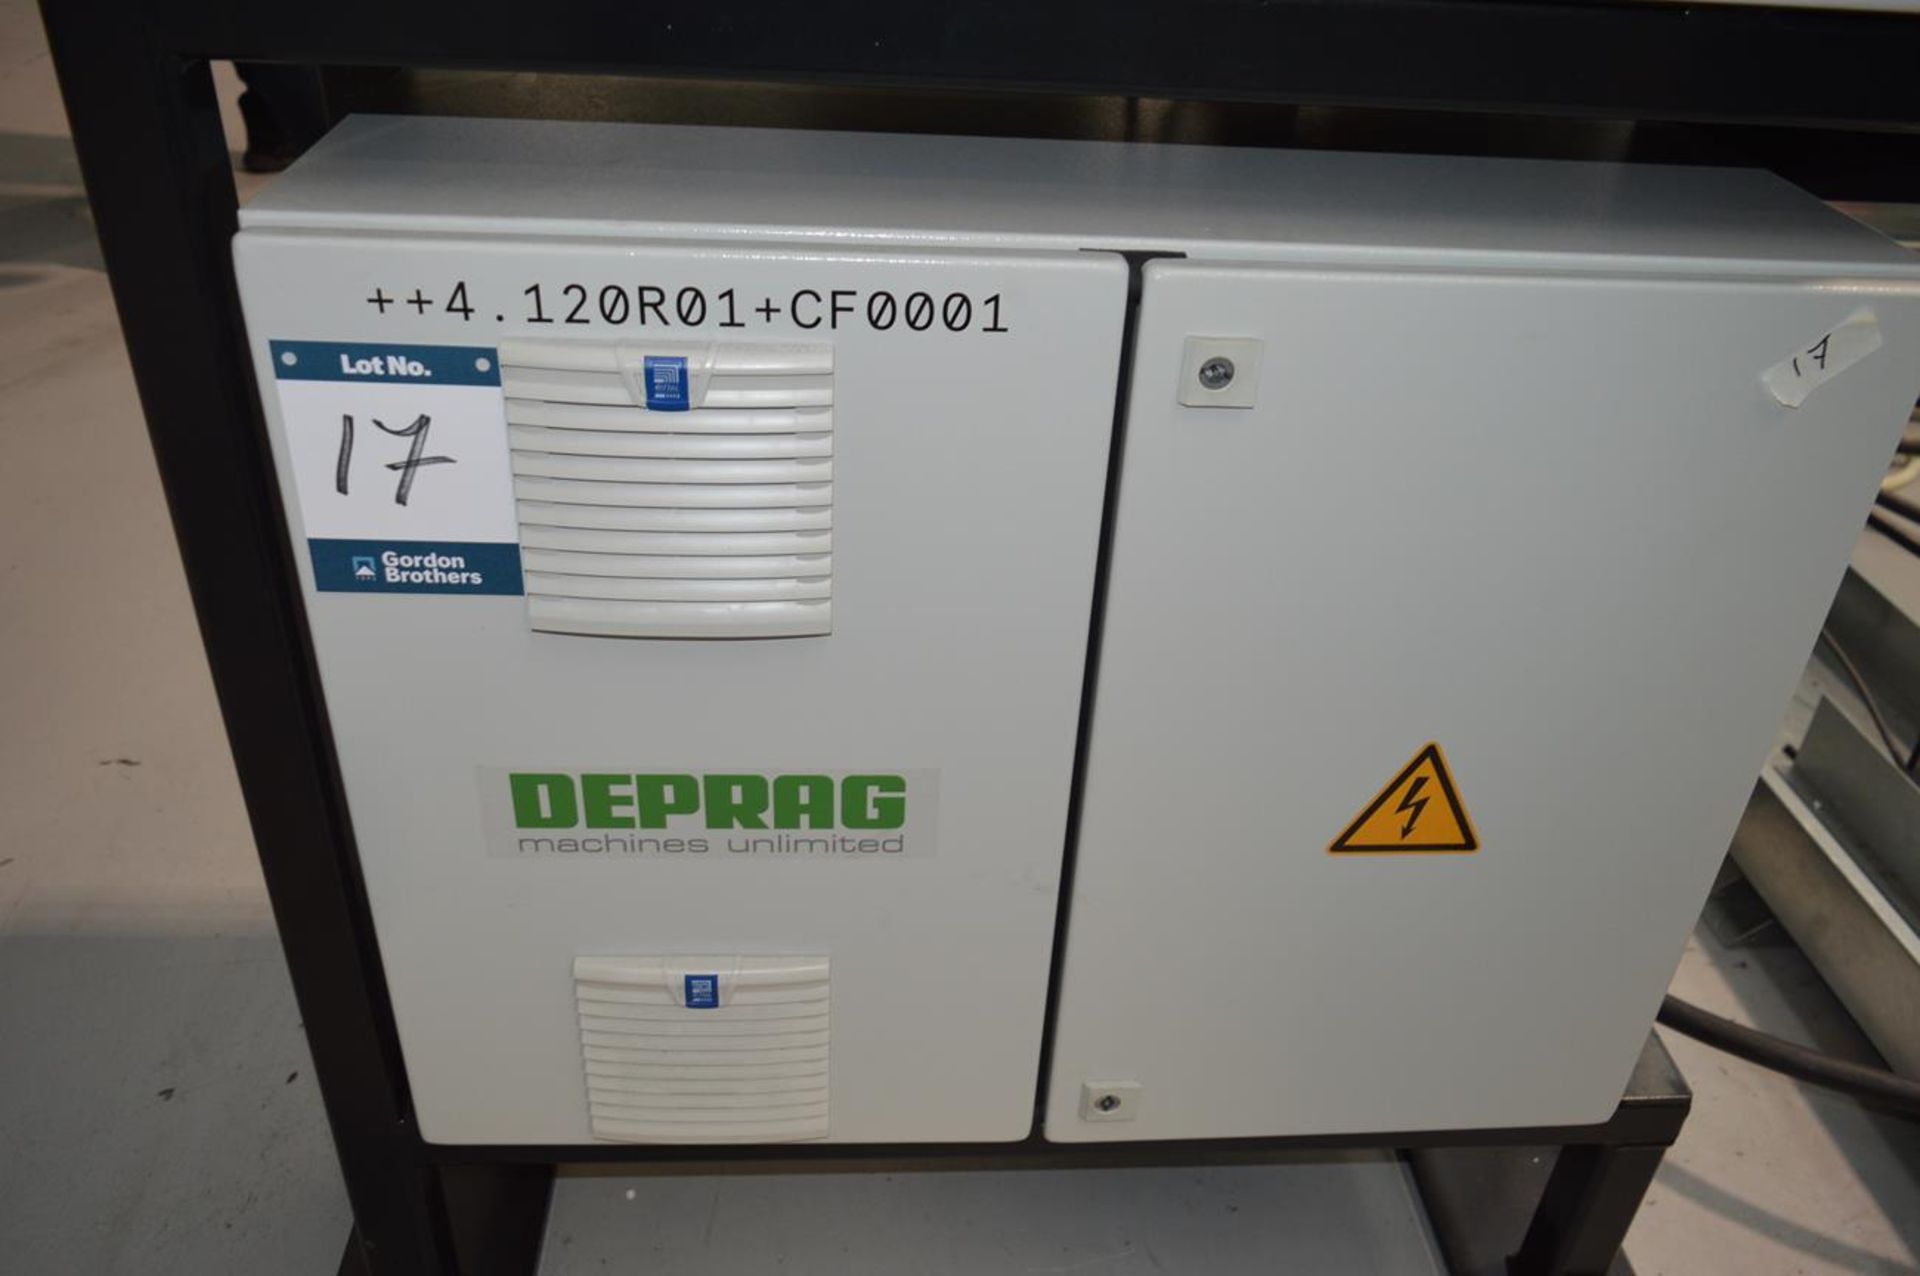 Deprag, ADFS-2-1508-1 Flowform Adaptive DFS controller, Serial No. 1393270/21 freeform robot